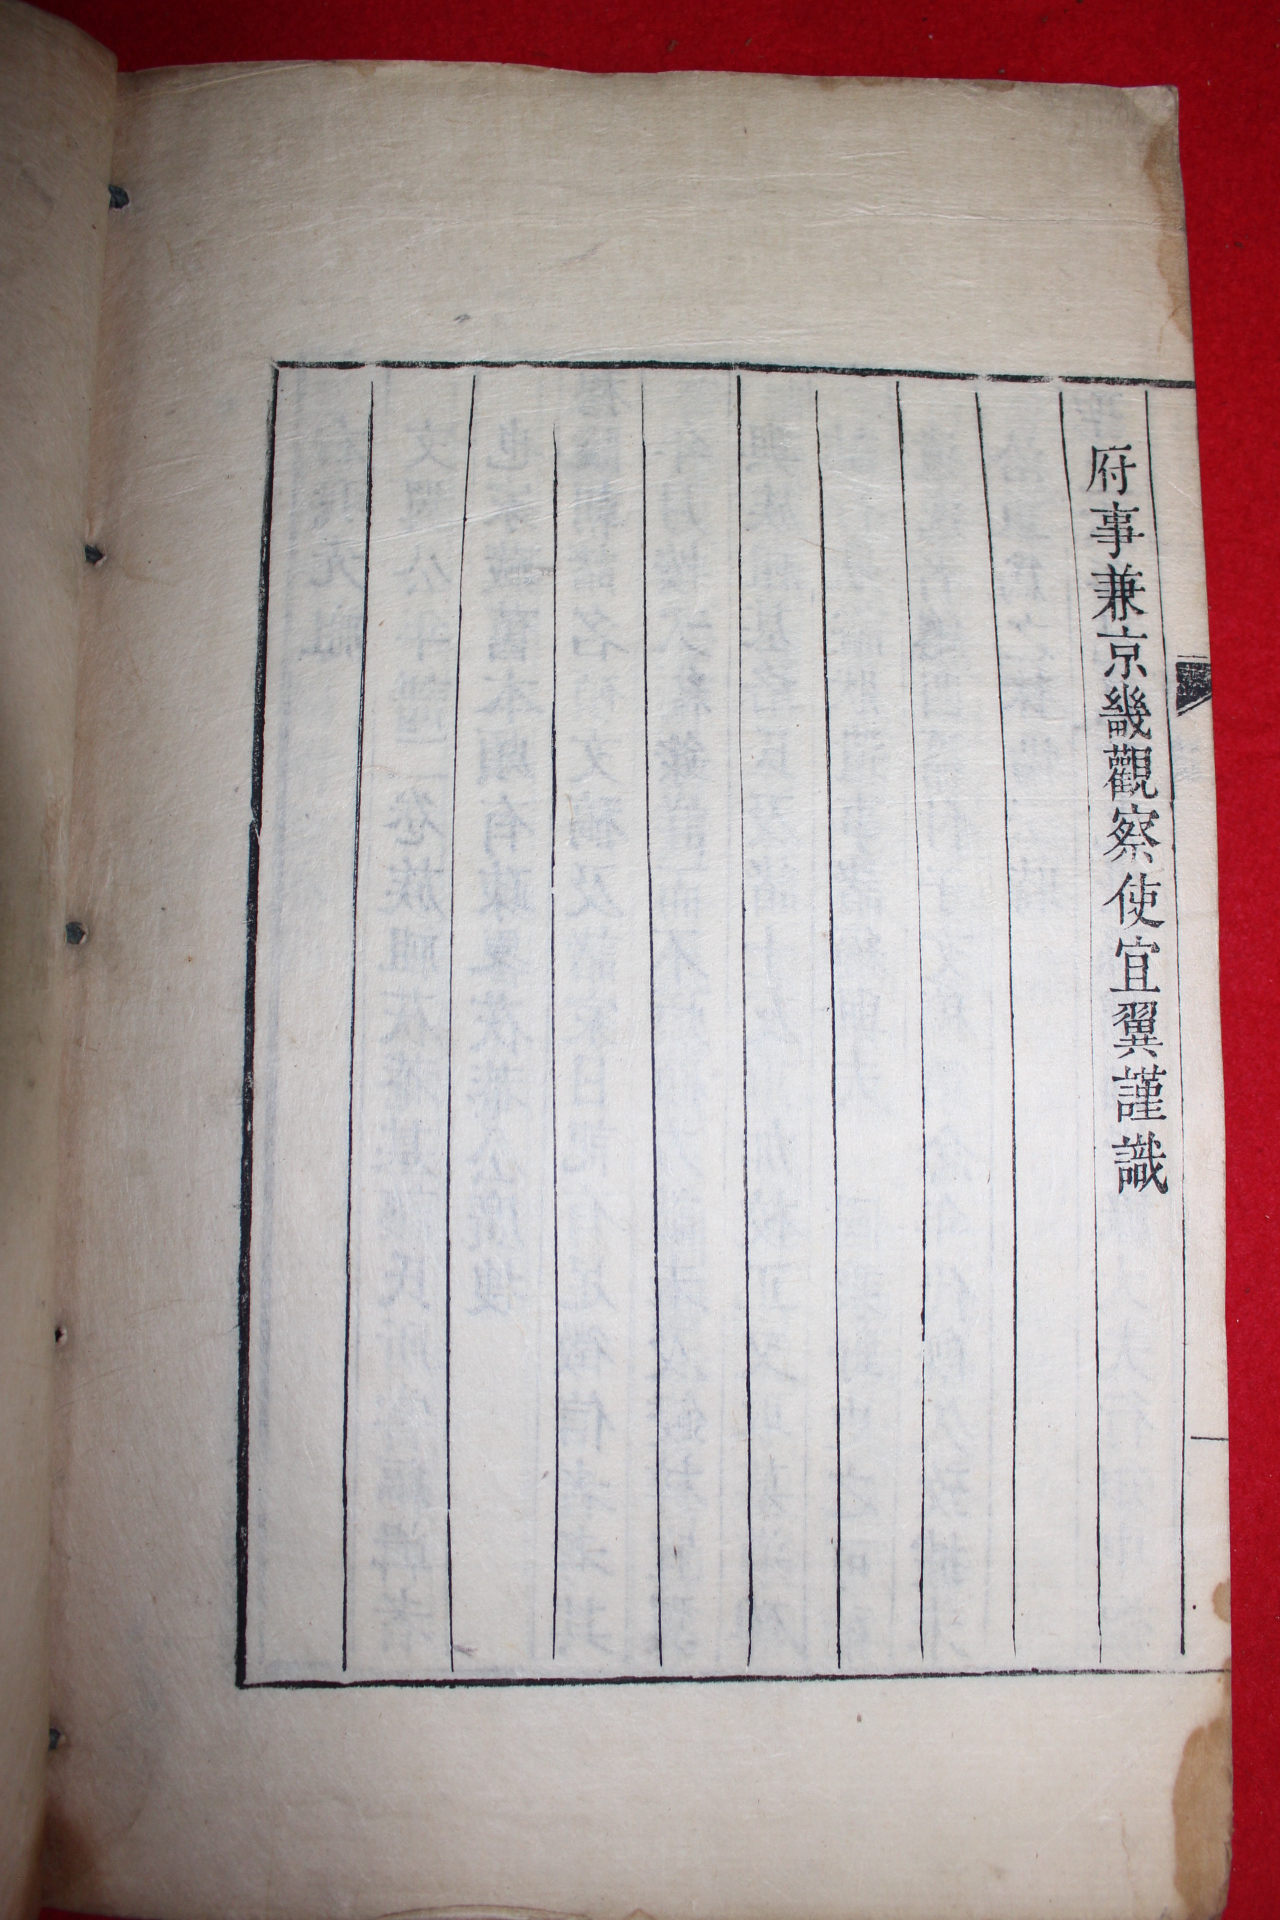 1869년 금속활자본(全史字) 한음선생문고부록(漢陰先生文稿附錄)4권3책완질